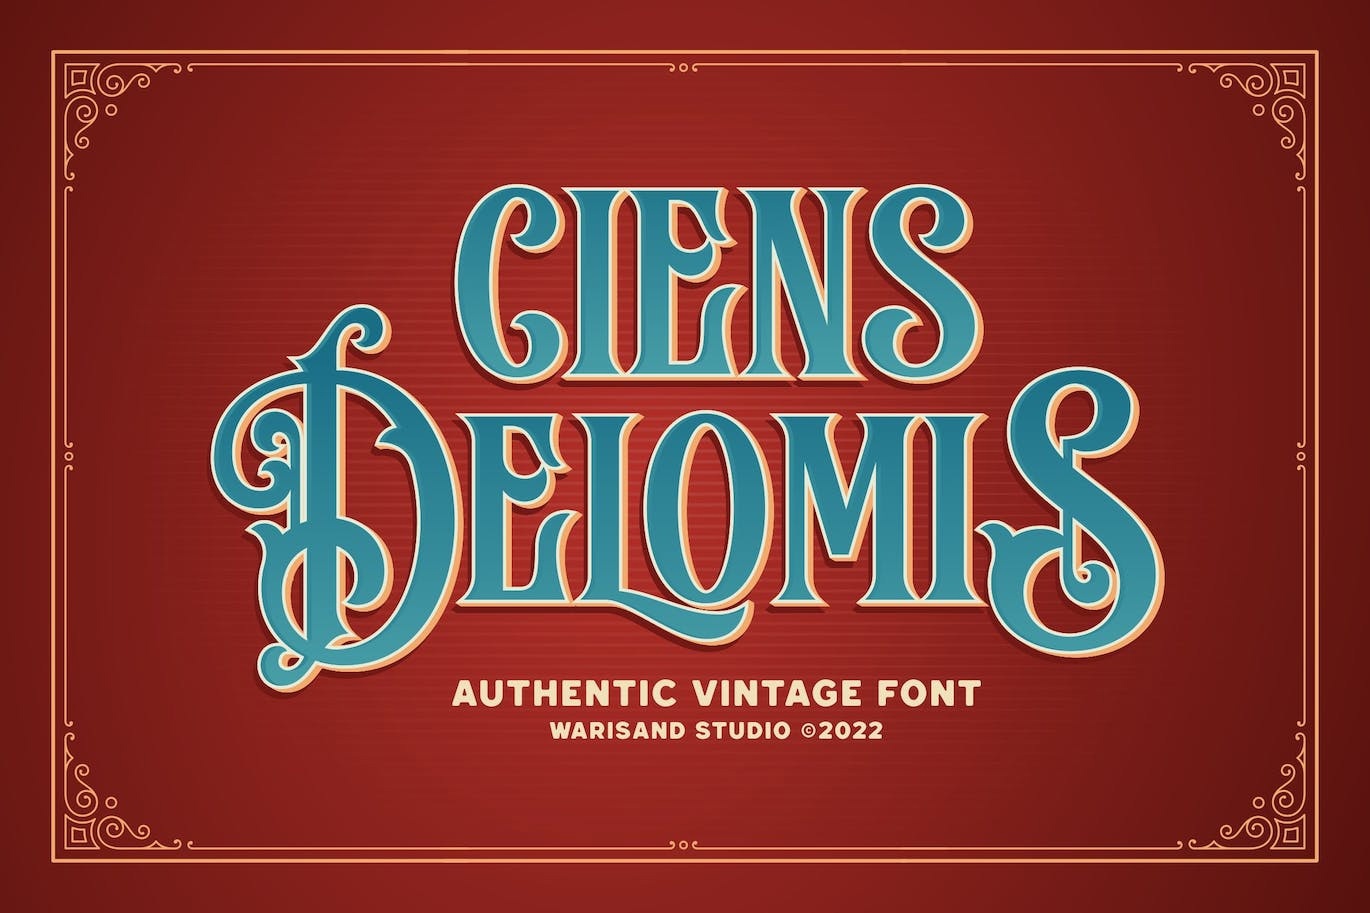 Ciens Delomis Font